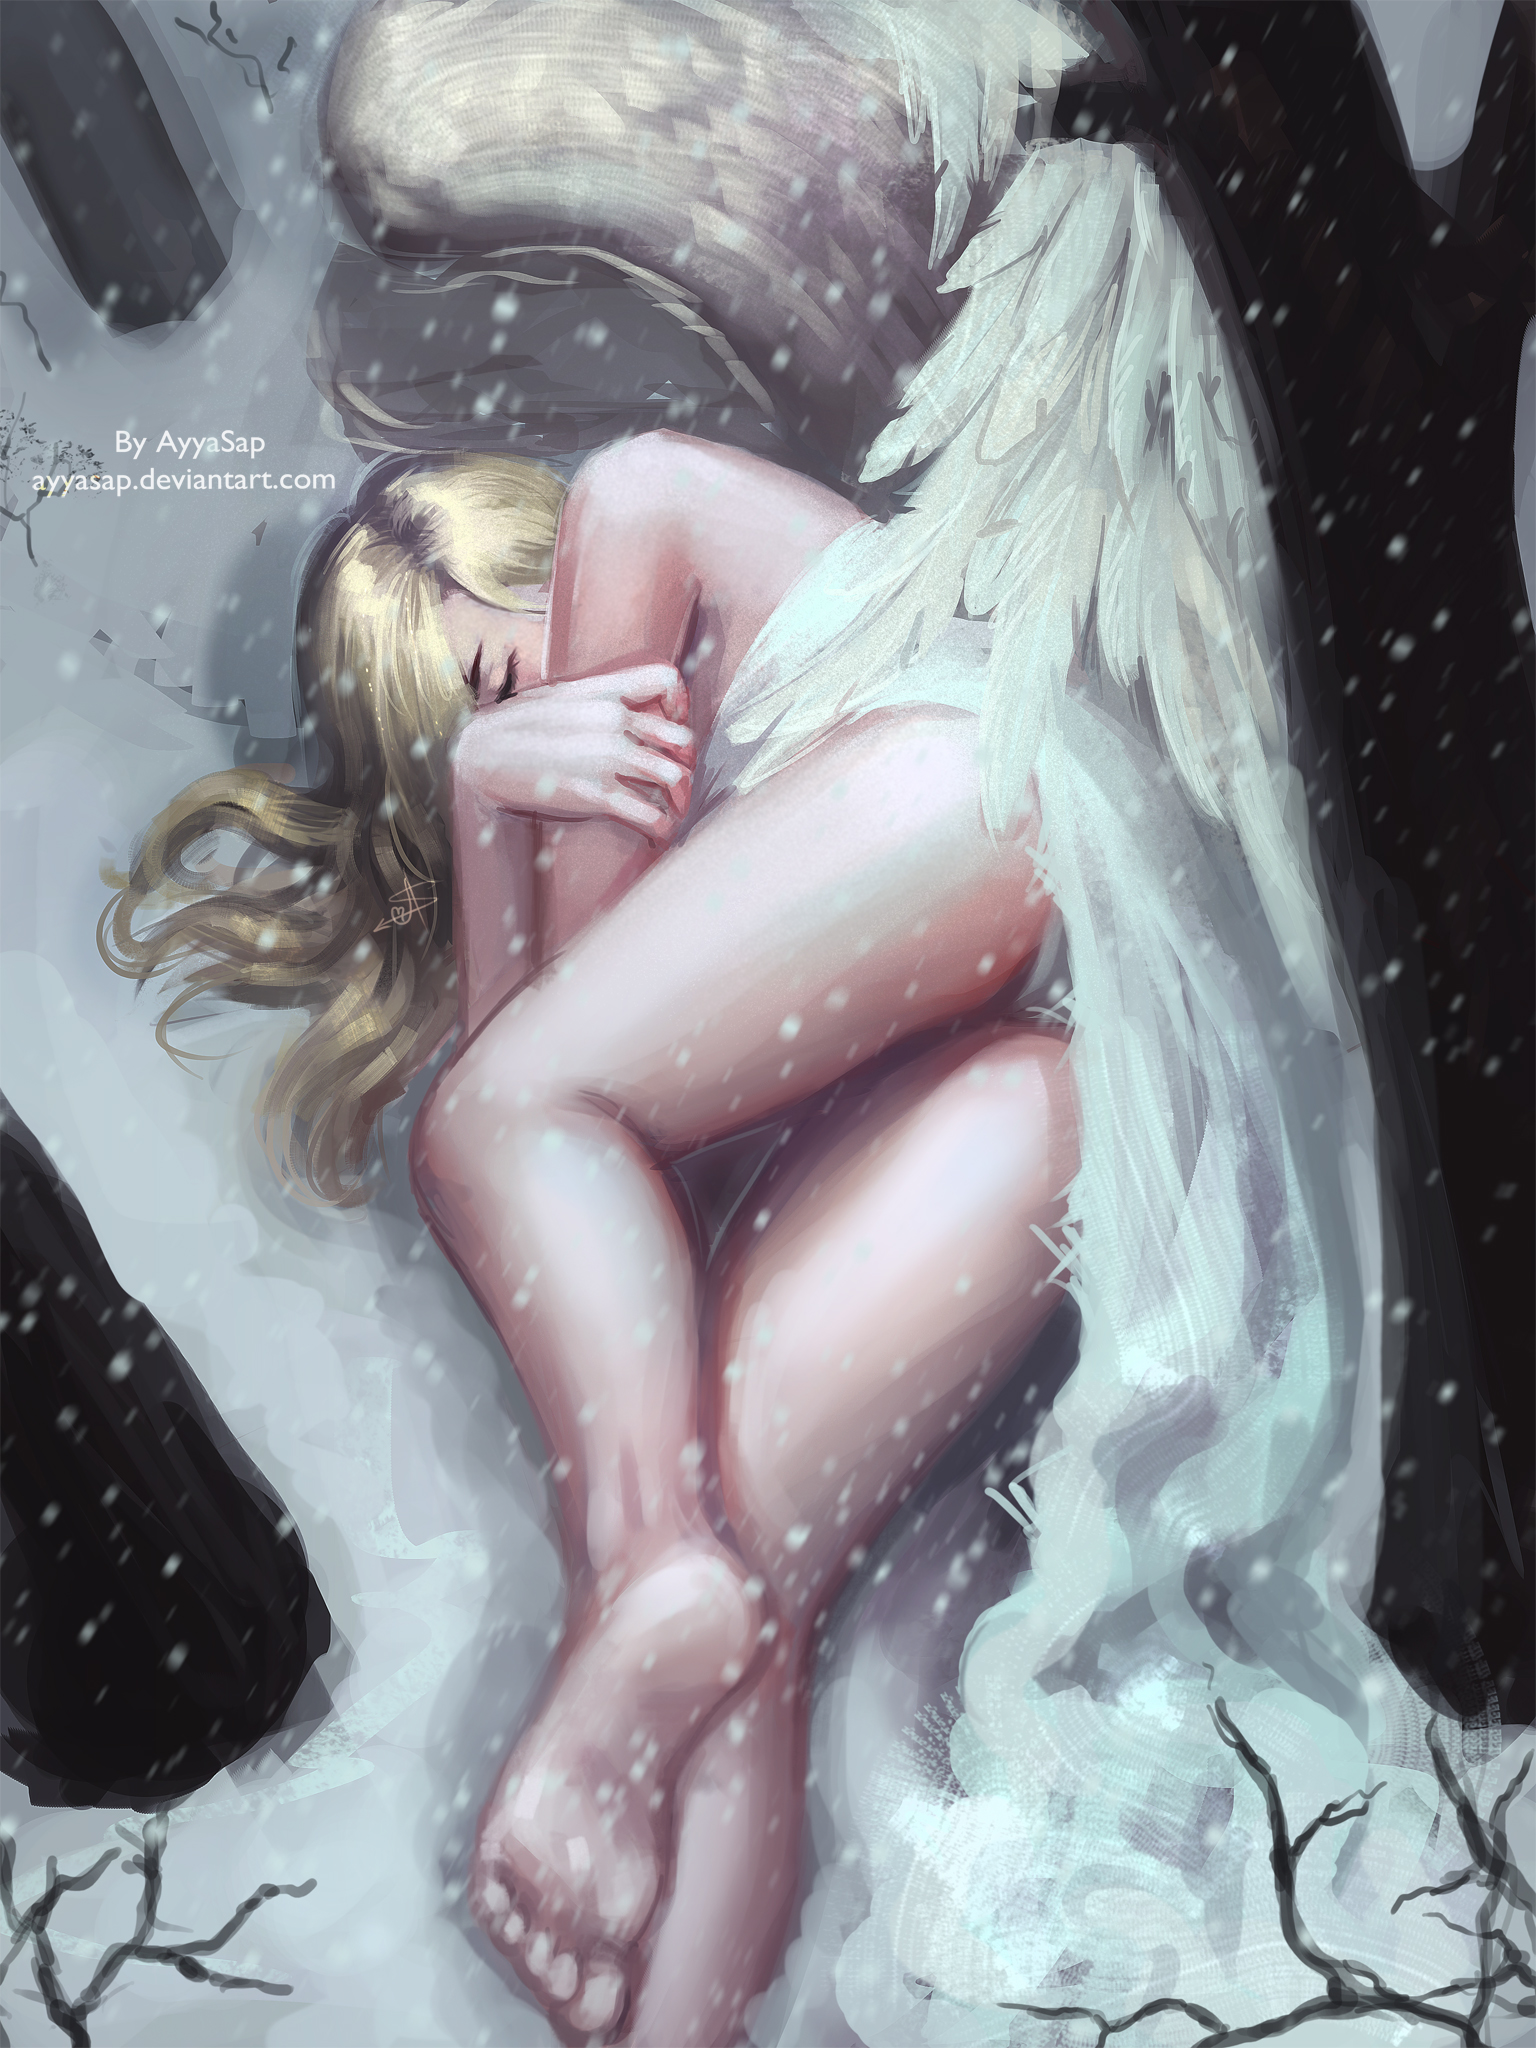 Фото Девушка-ангел лежит на снегу, art by ayyasap